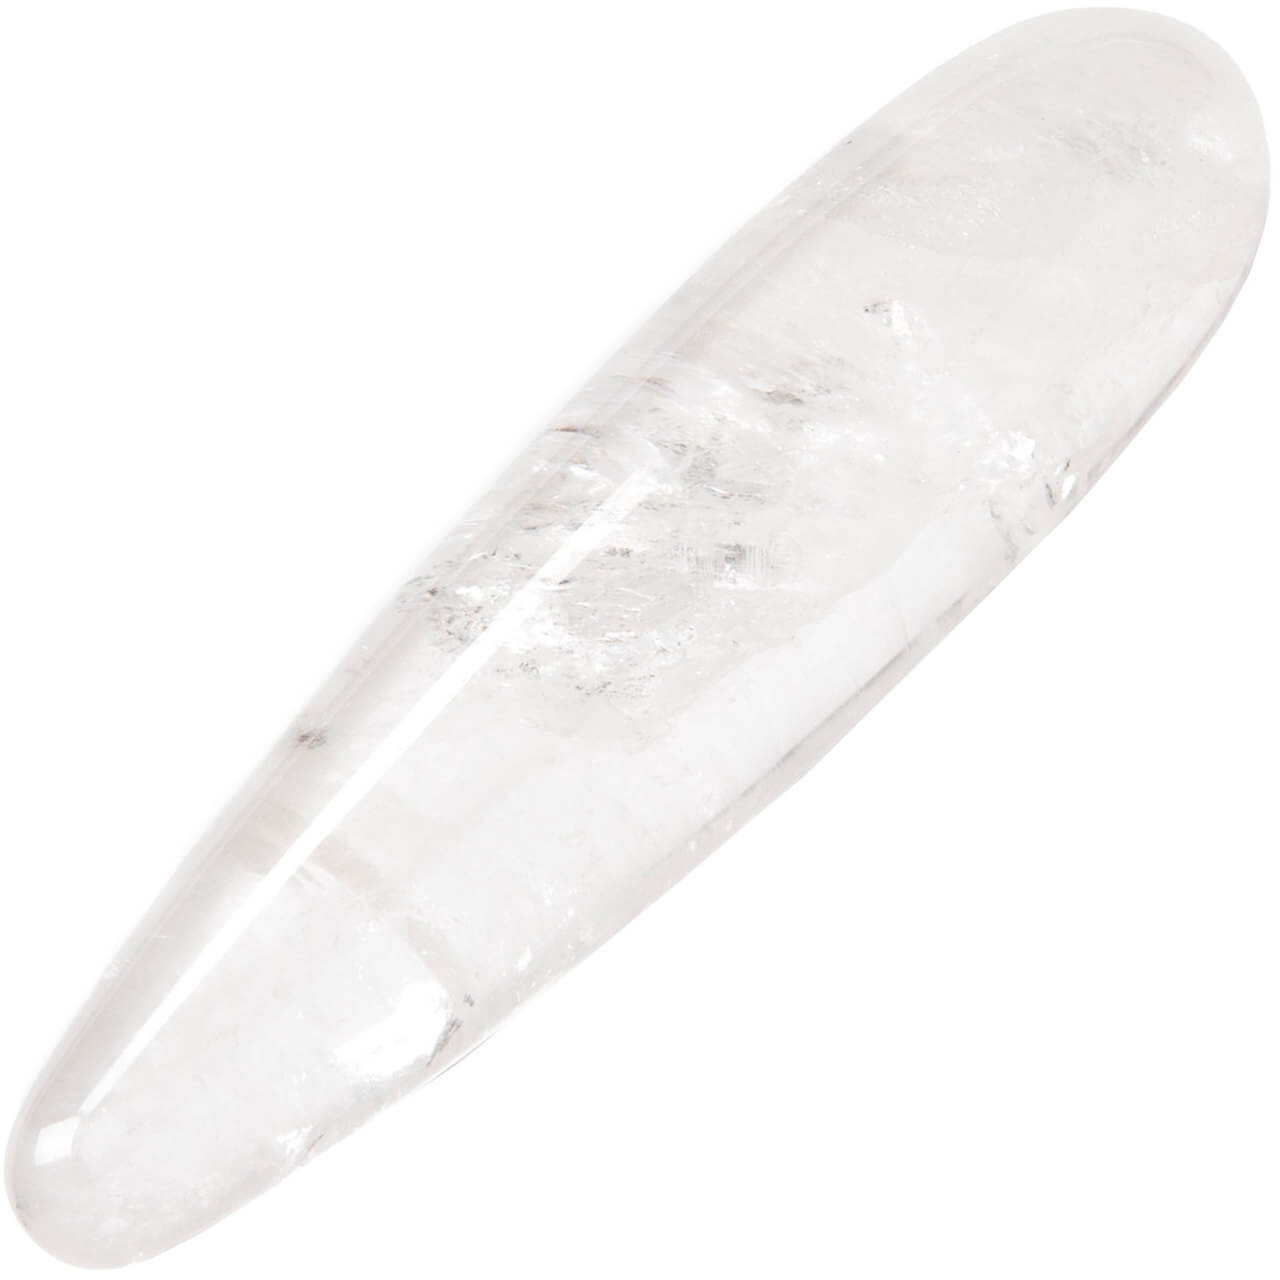 Chakrubs Original Prism Clear Quartz Crystal Dildo